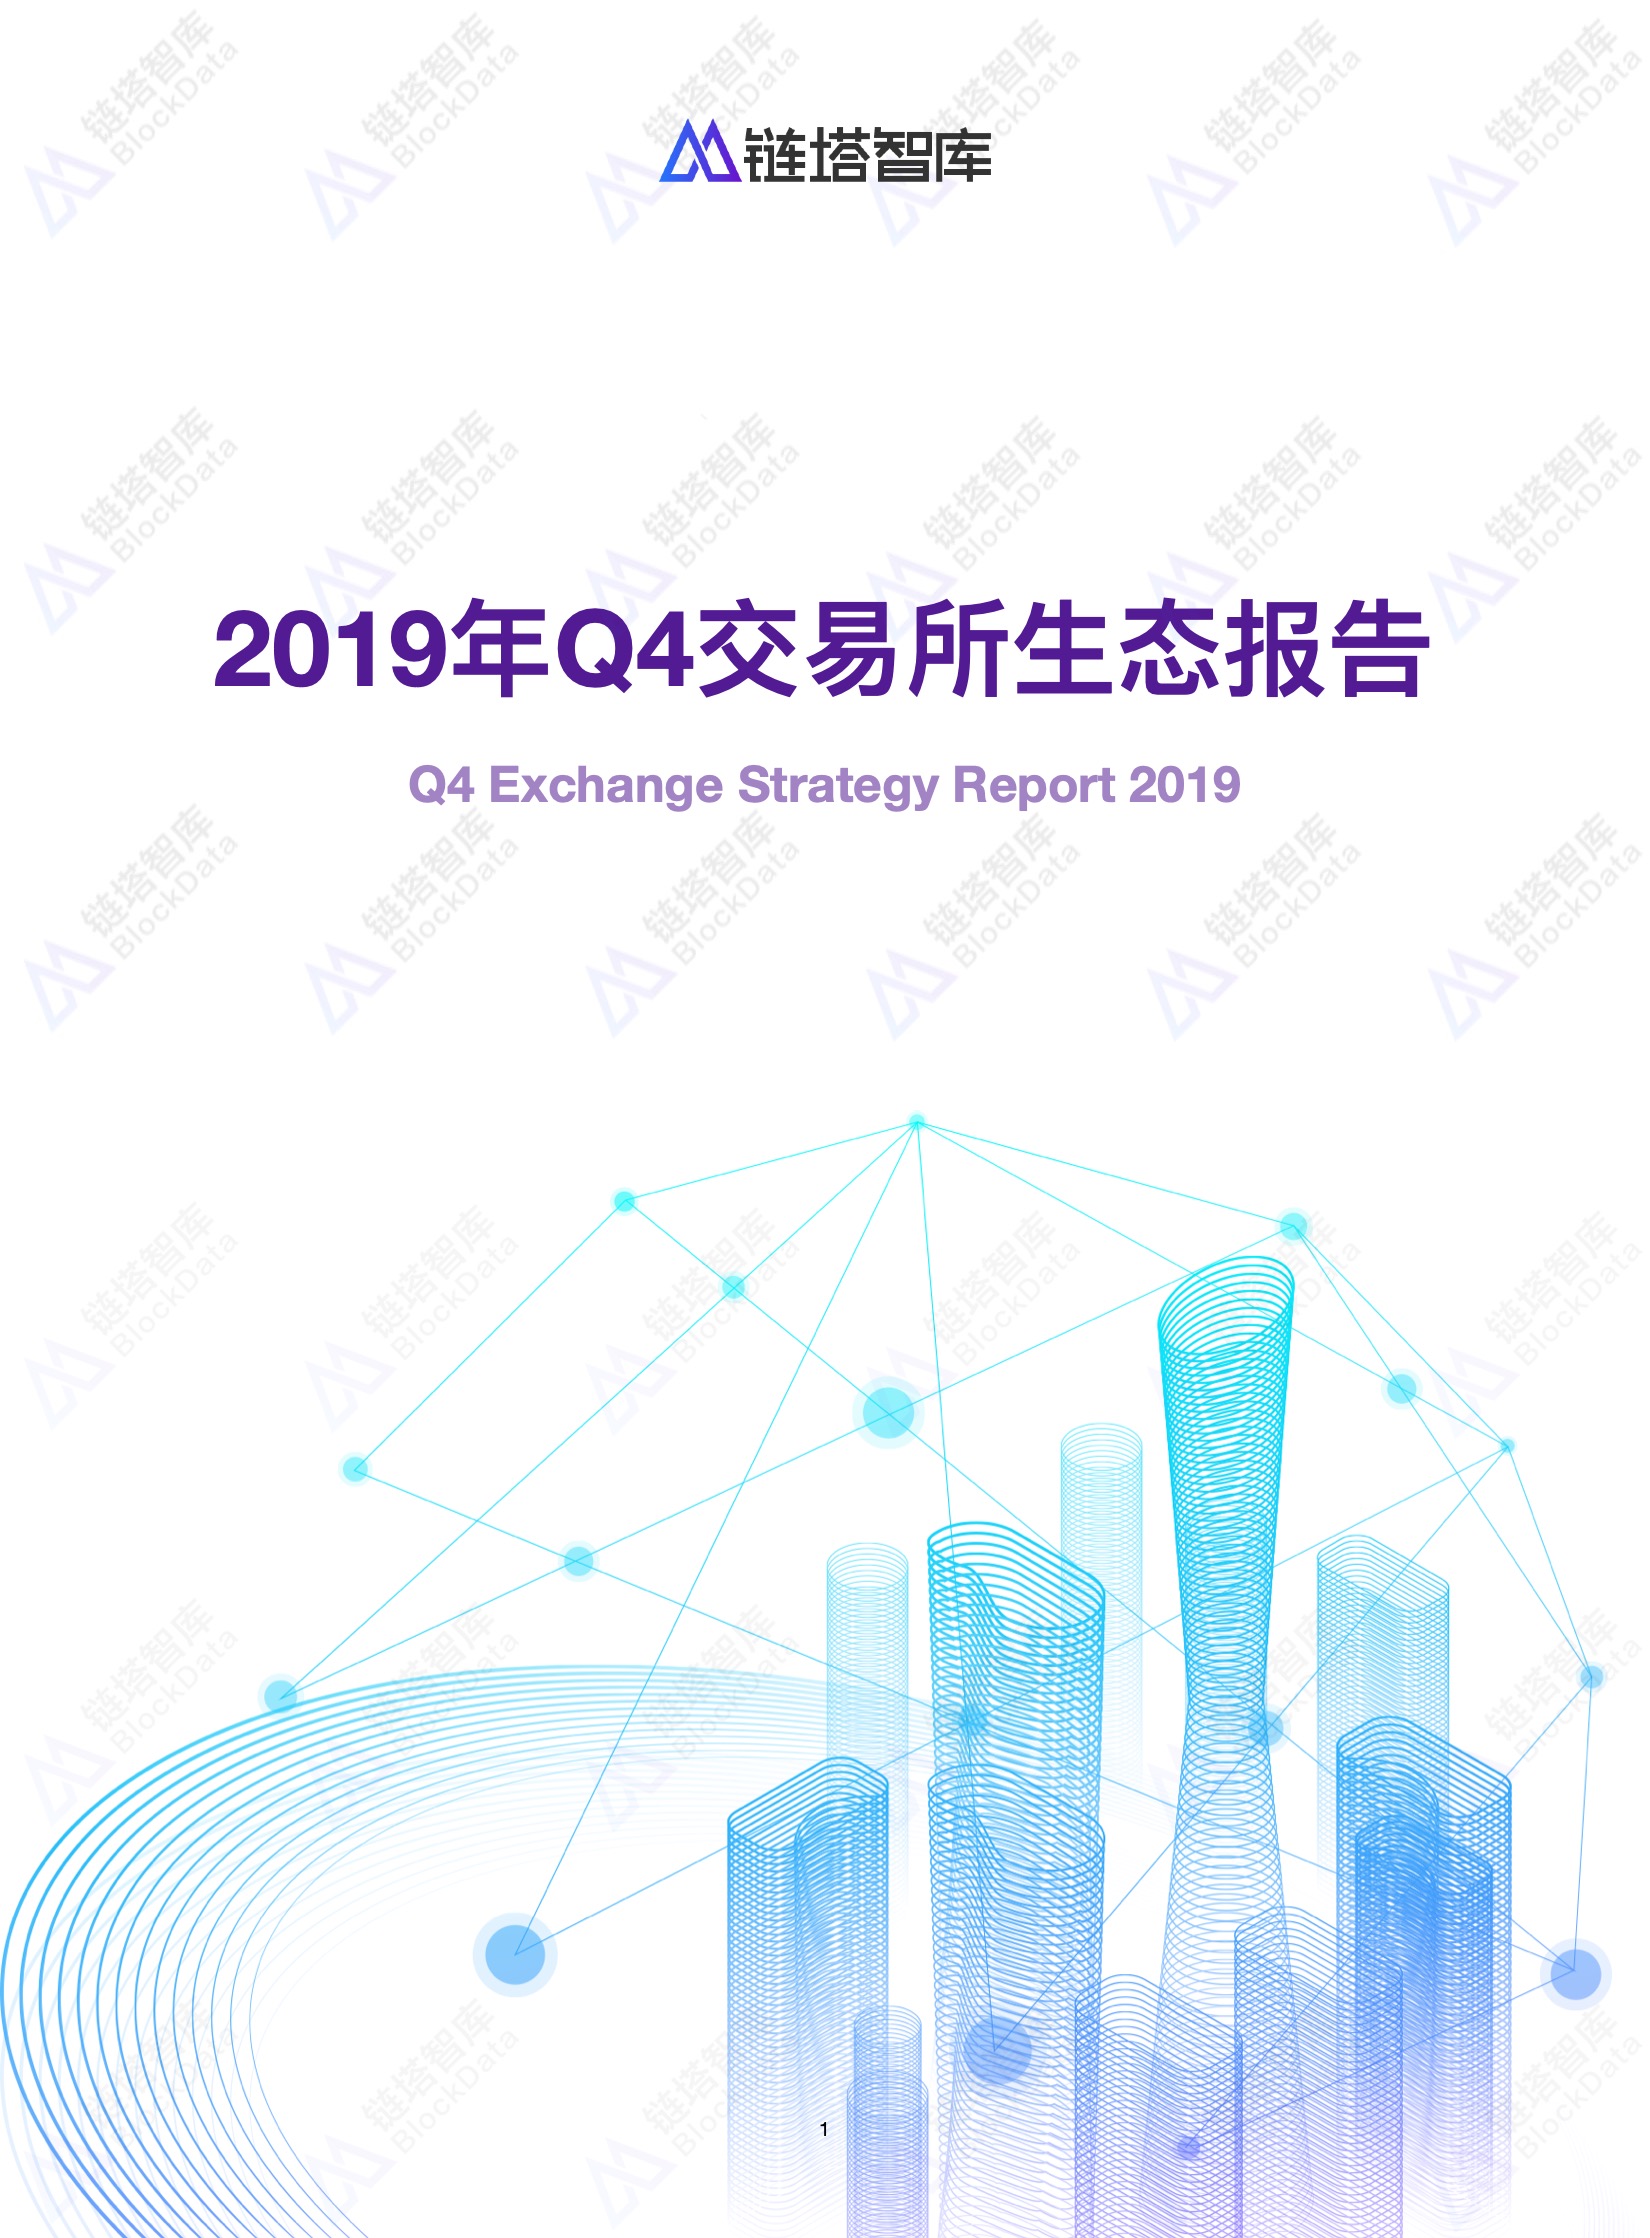 2019年Q4交易所生态报告 |链塔智库